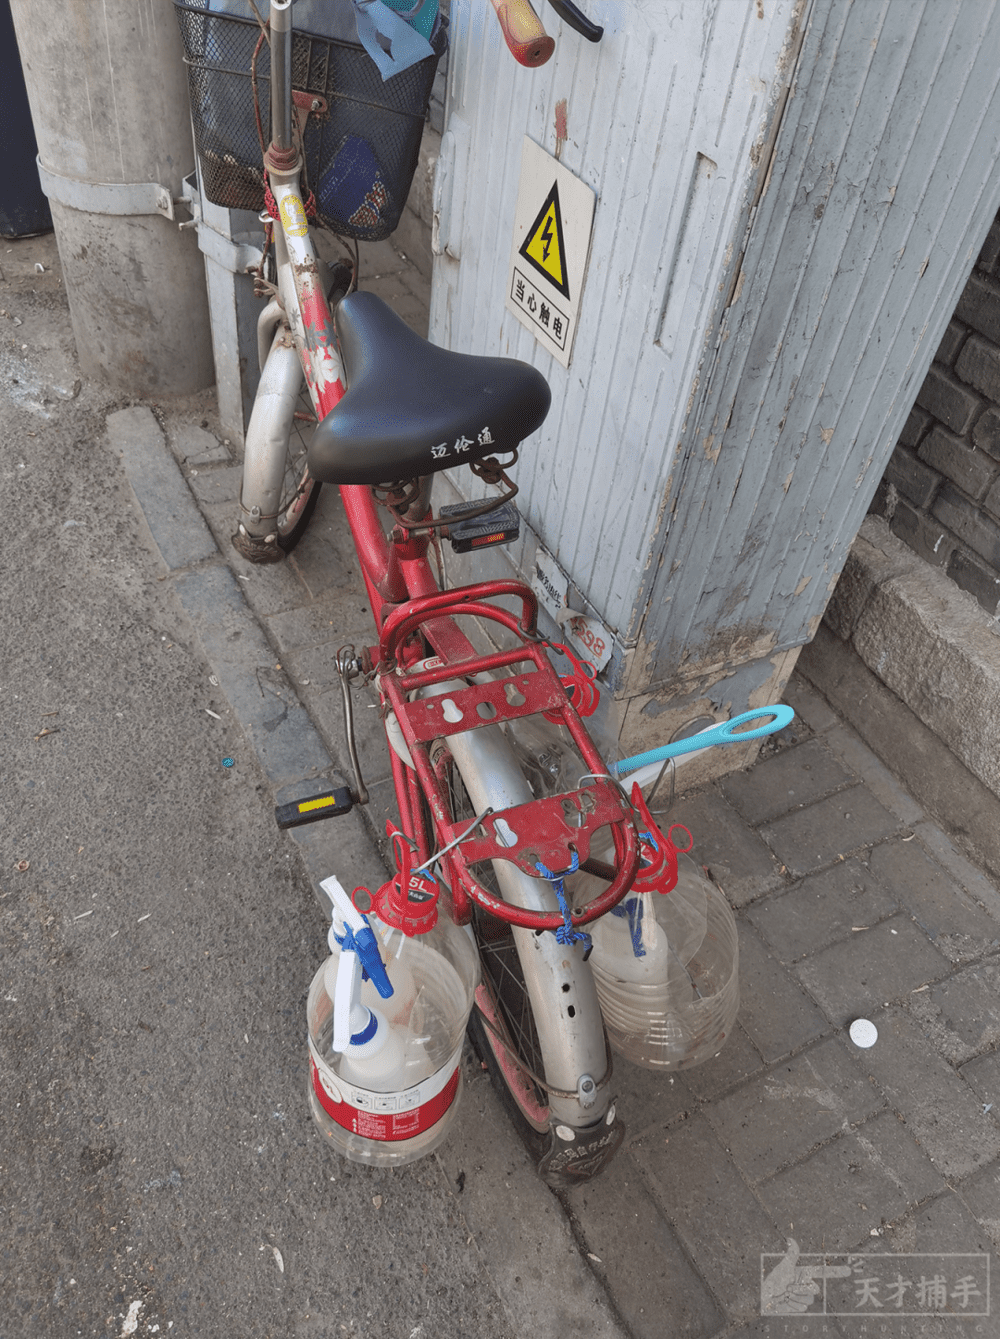 张元民的二手自行车后面挂着他的清扫工具。